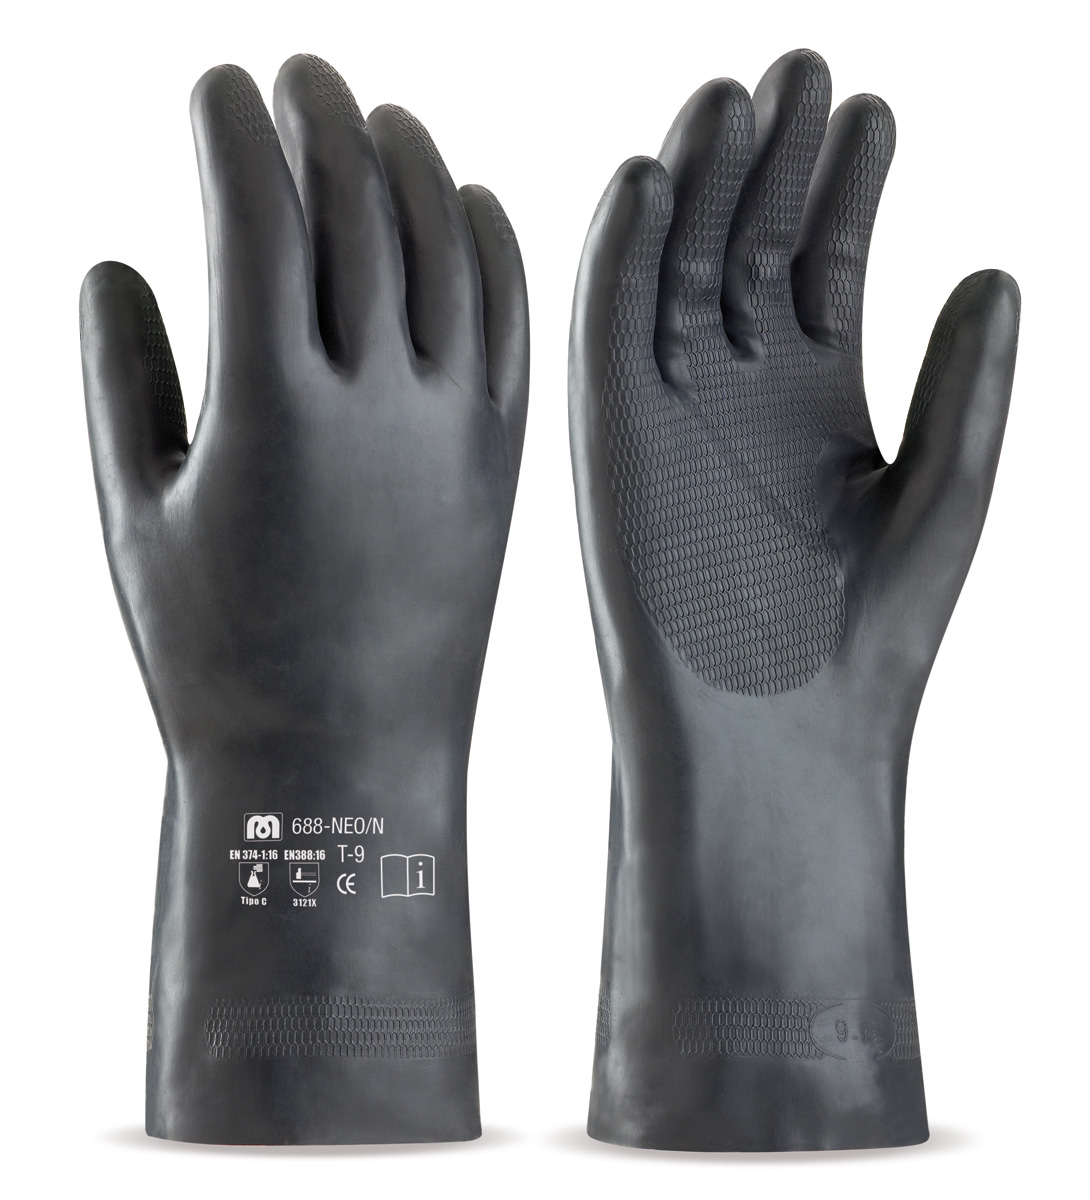 688-NEO/N Work Gloves Neoprene Black neoprene glove for mechanical and chemical hazards